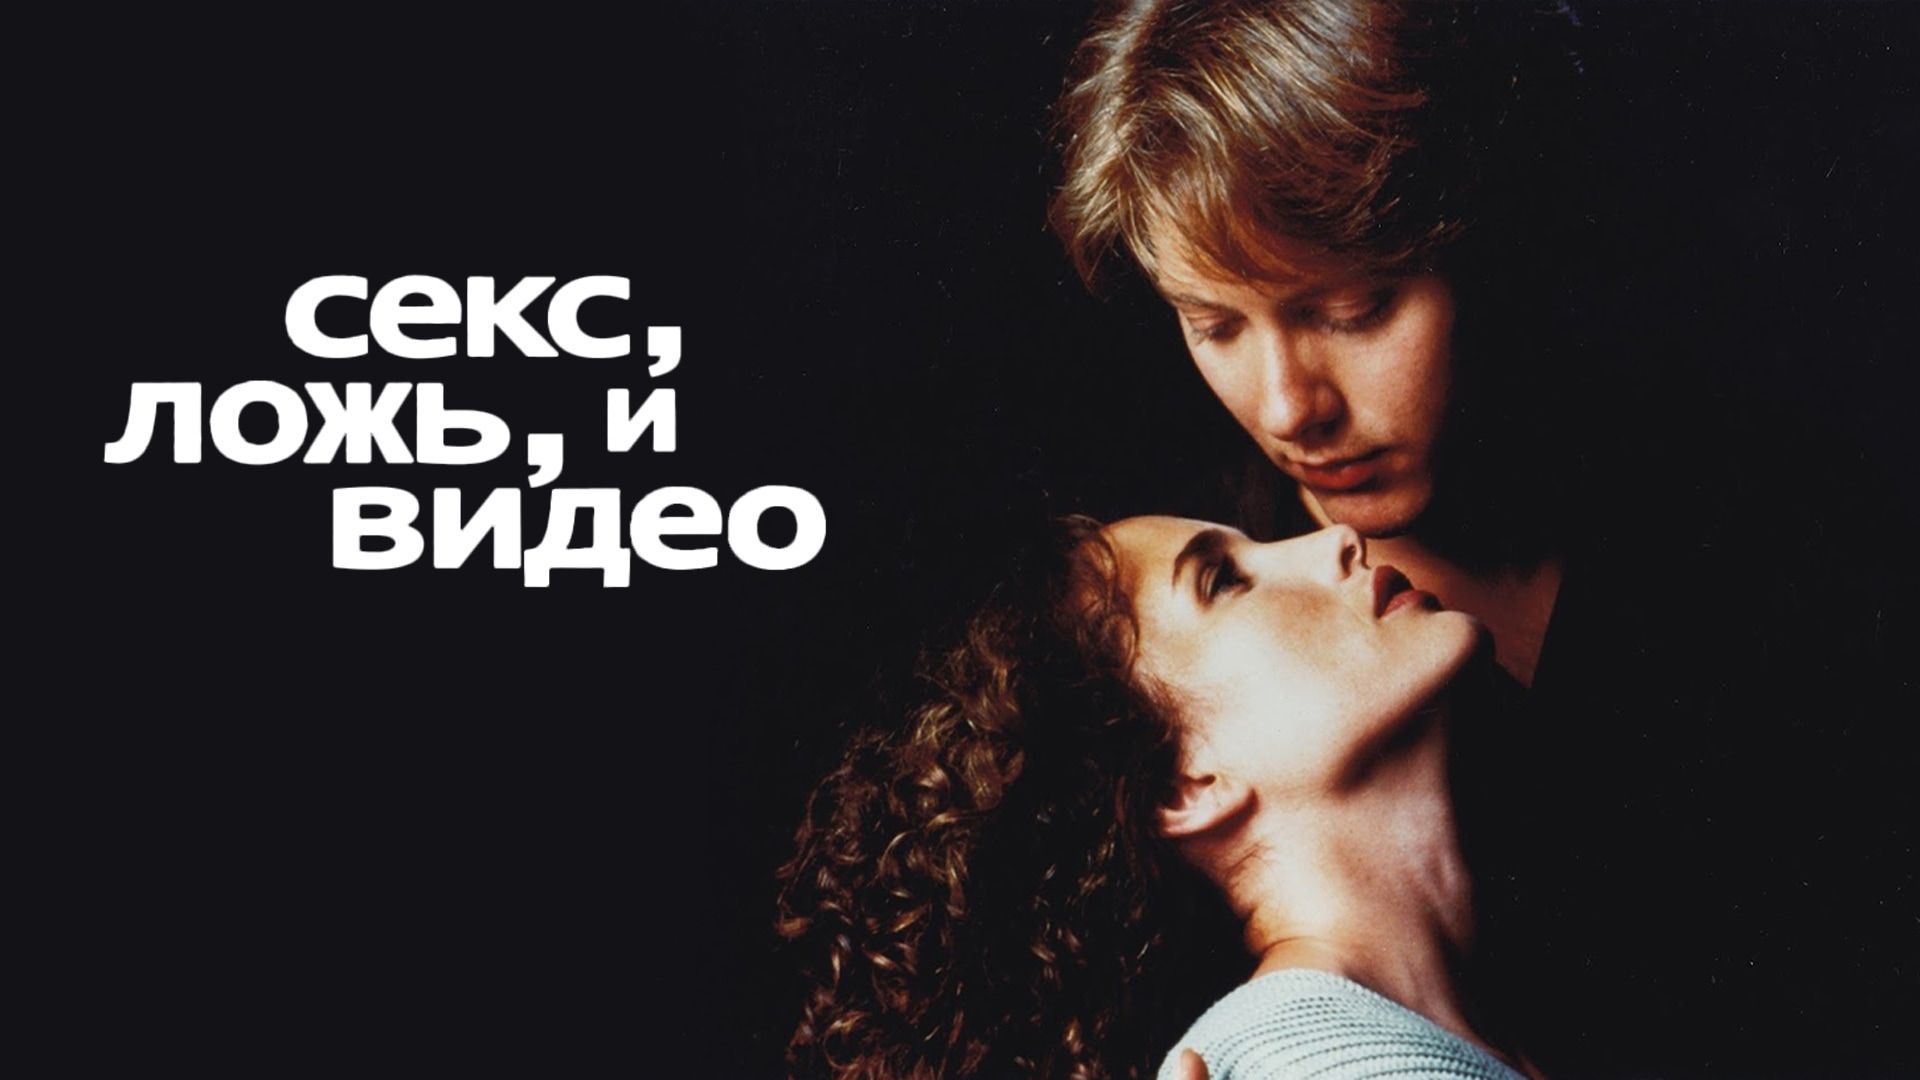 ❤️arnoldrak-spb.ru фильм красота по американски секс. Смотреть секс онлайн, скачать видео бесплатно.